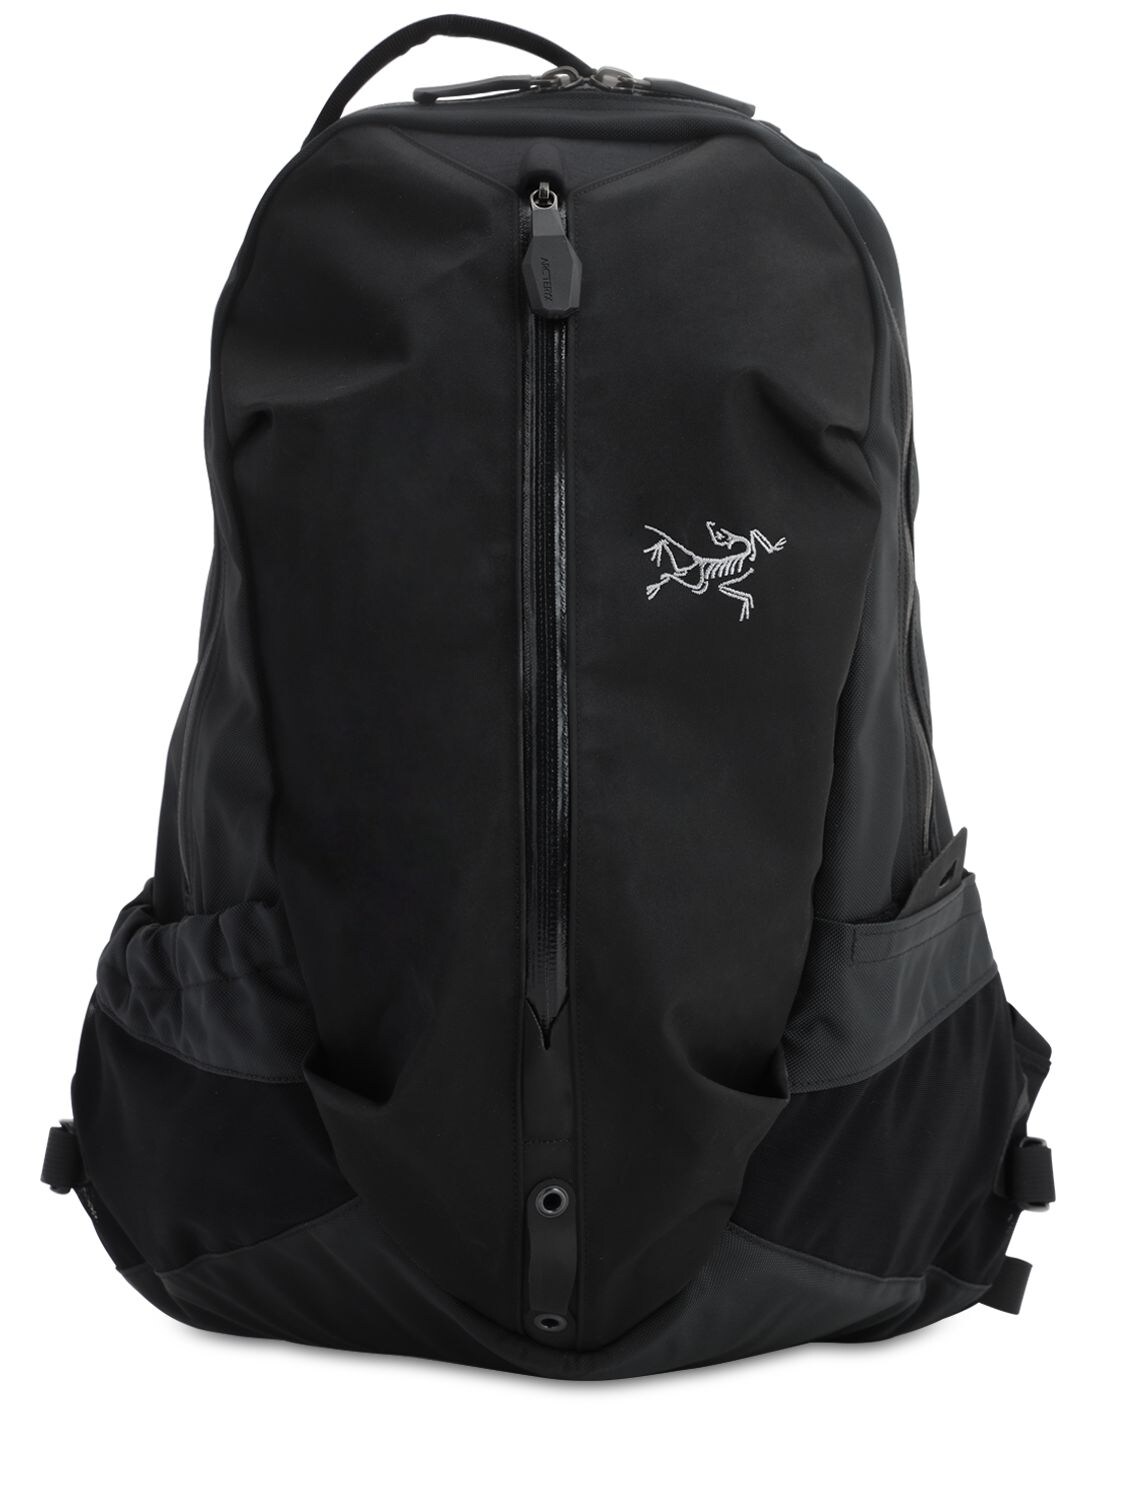 ARC'TERYX Backpacks for Men | ModeSens